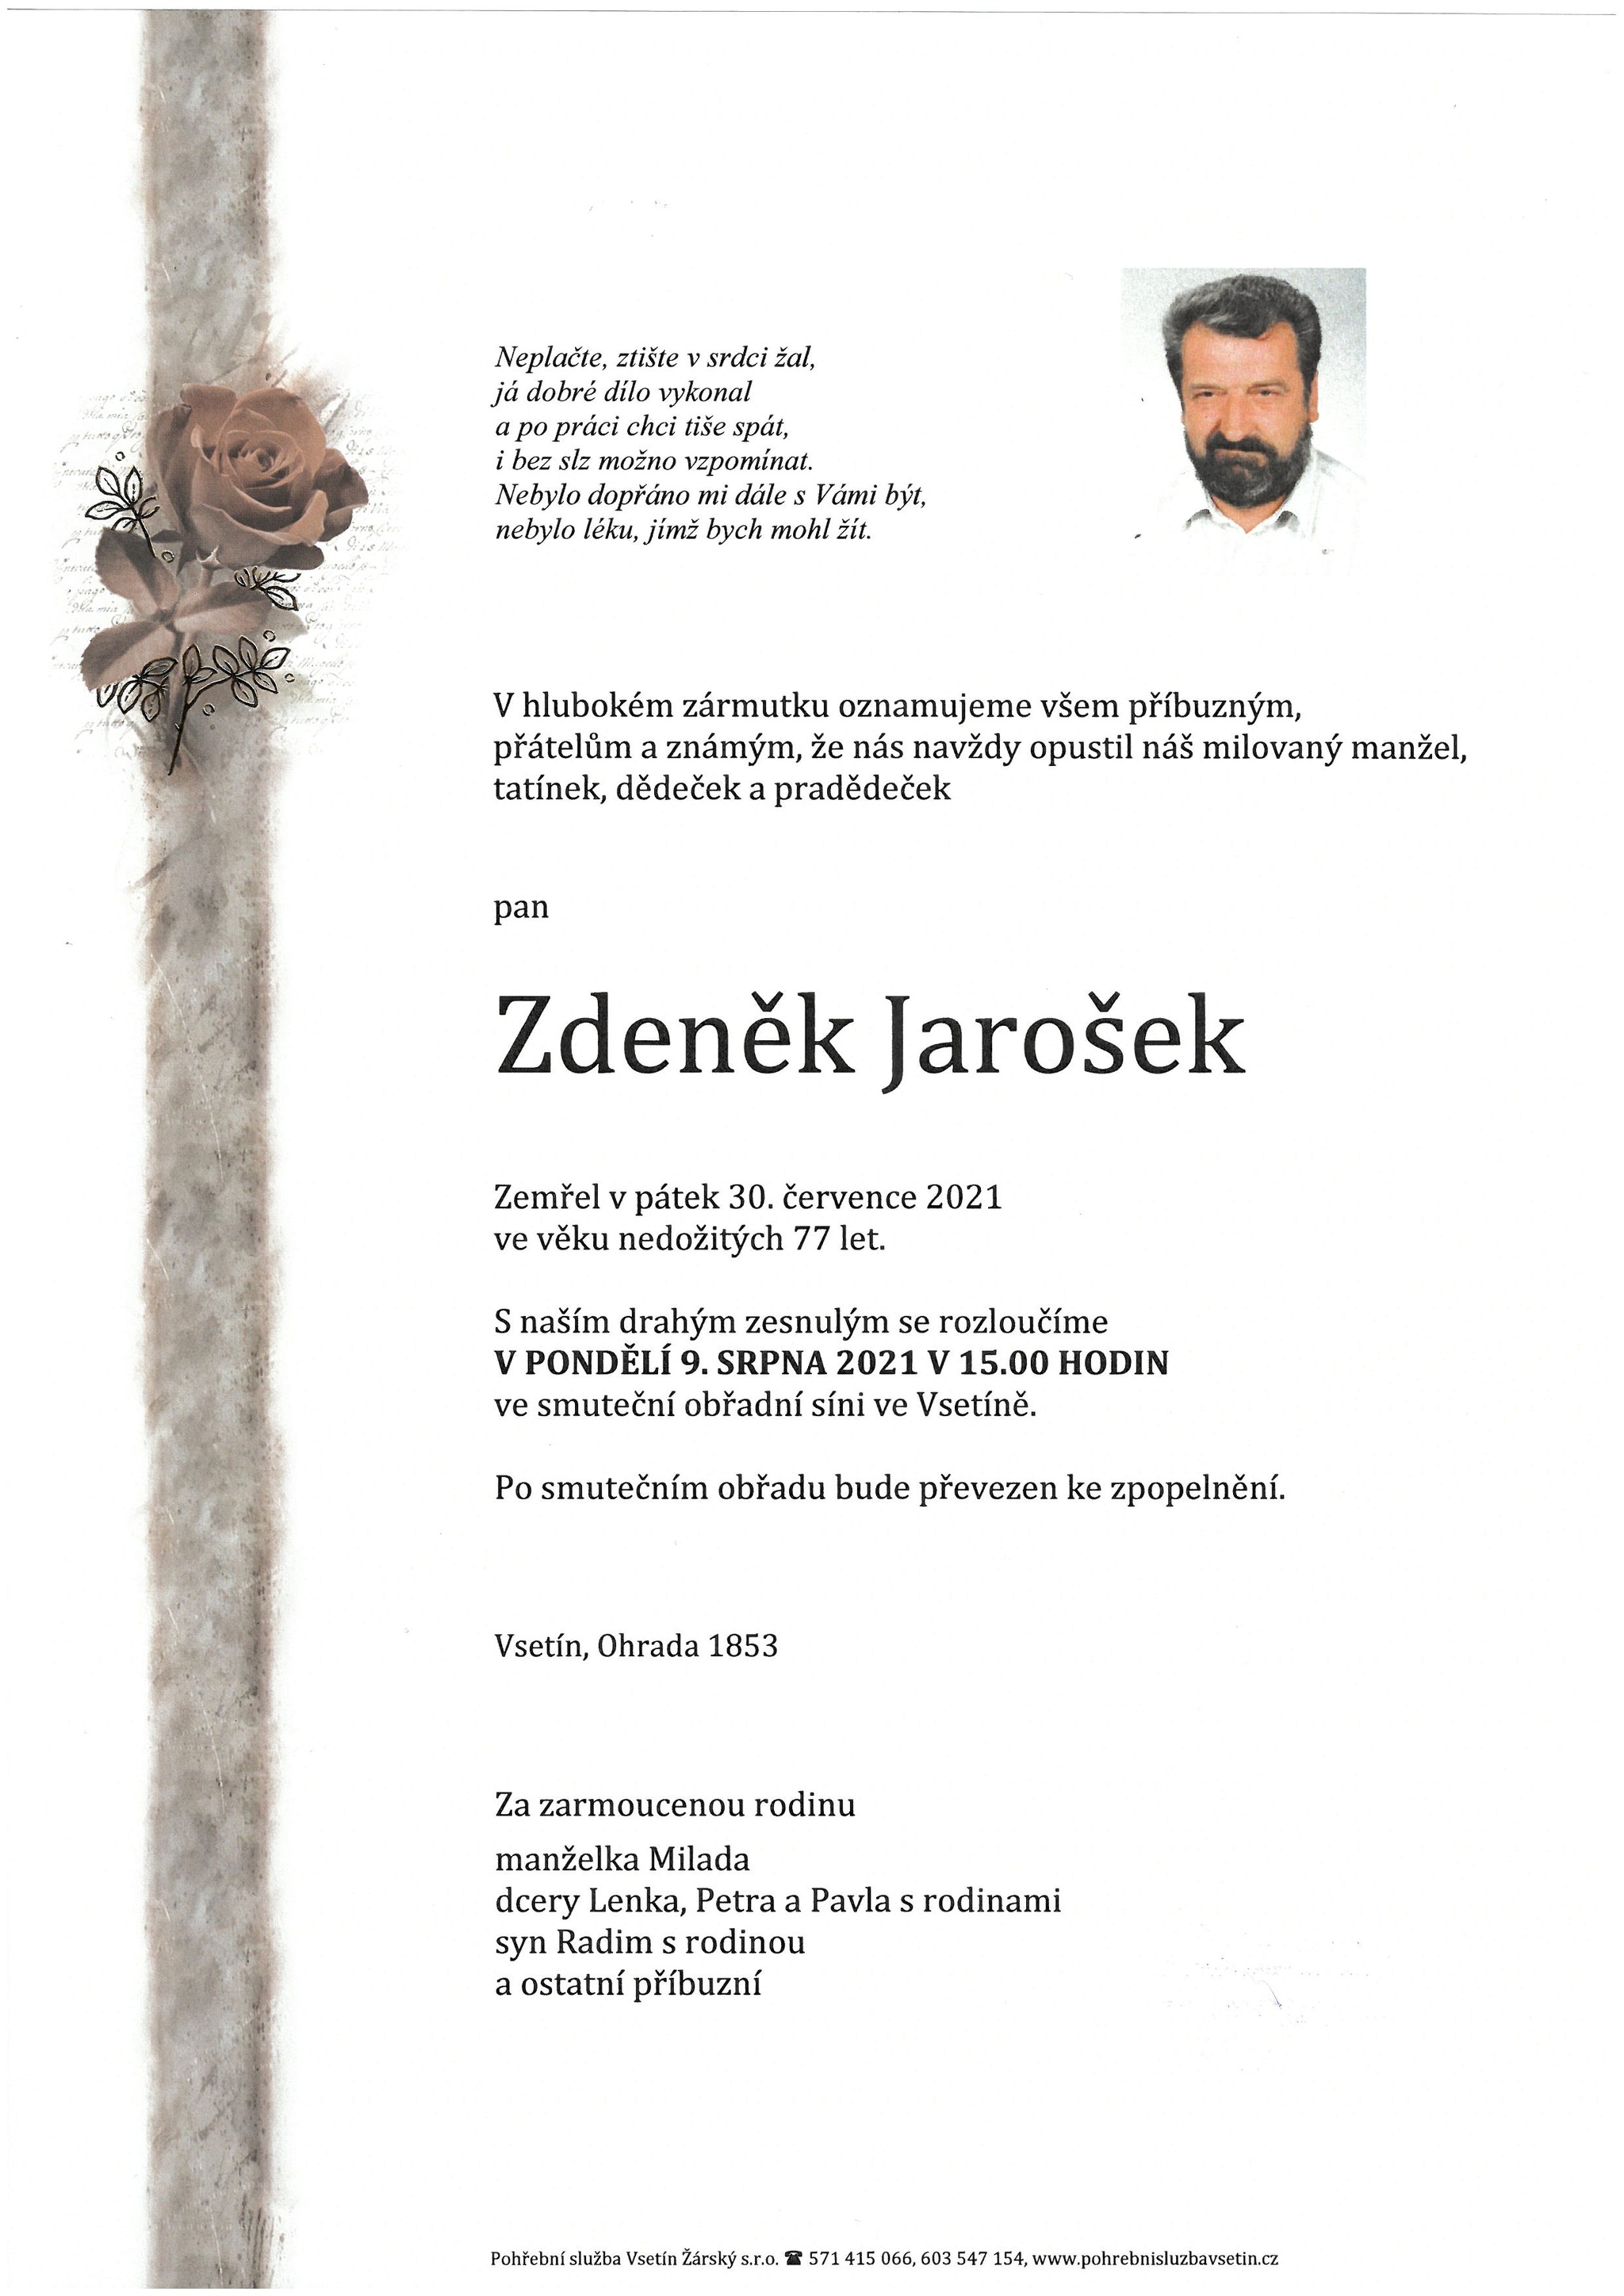 Zdeněk Jarošek